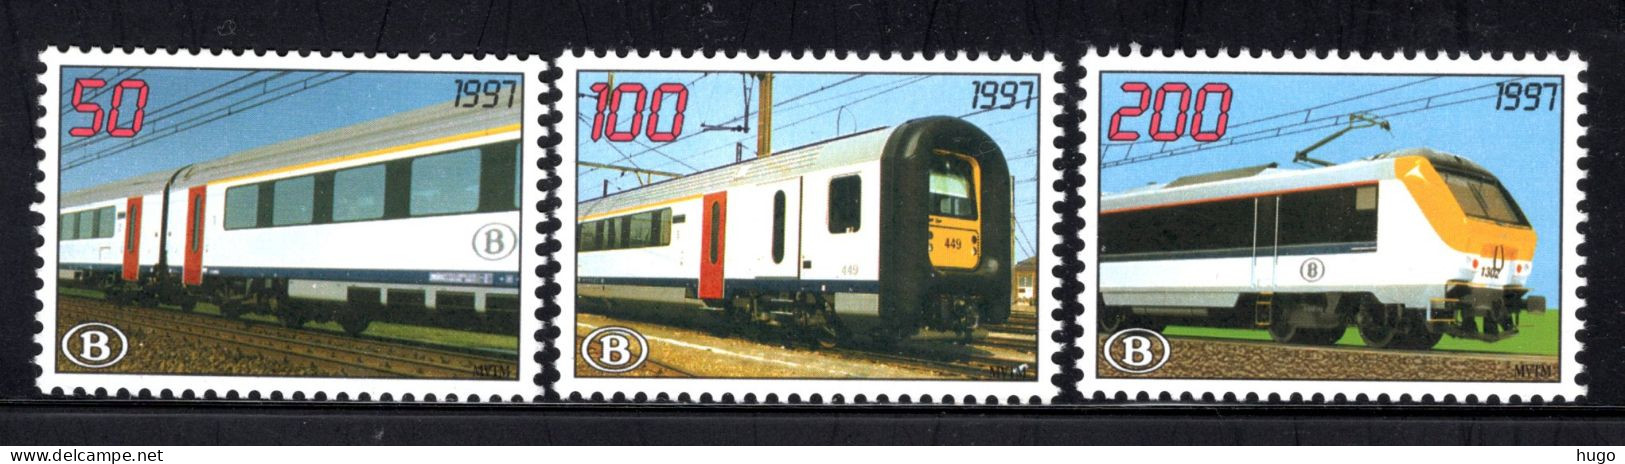 TRV3/5 MNH 1997 - Ingebruikname Nieuwe Trein I11 - 1996-2013 Viñetas [TRV]